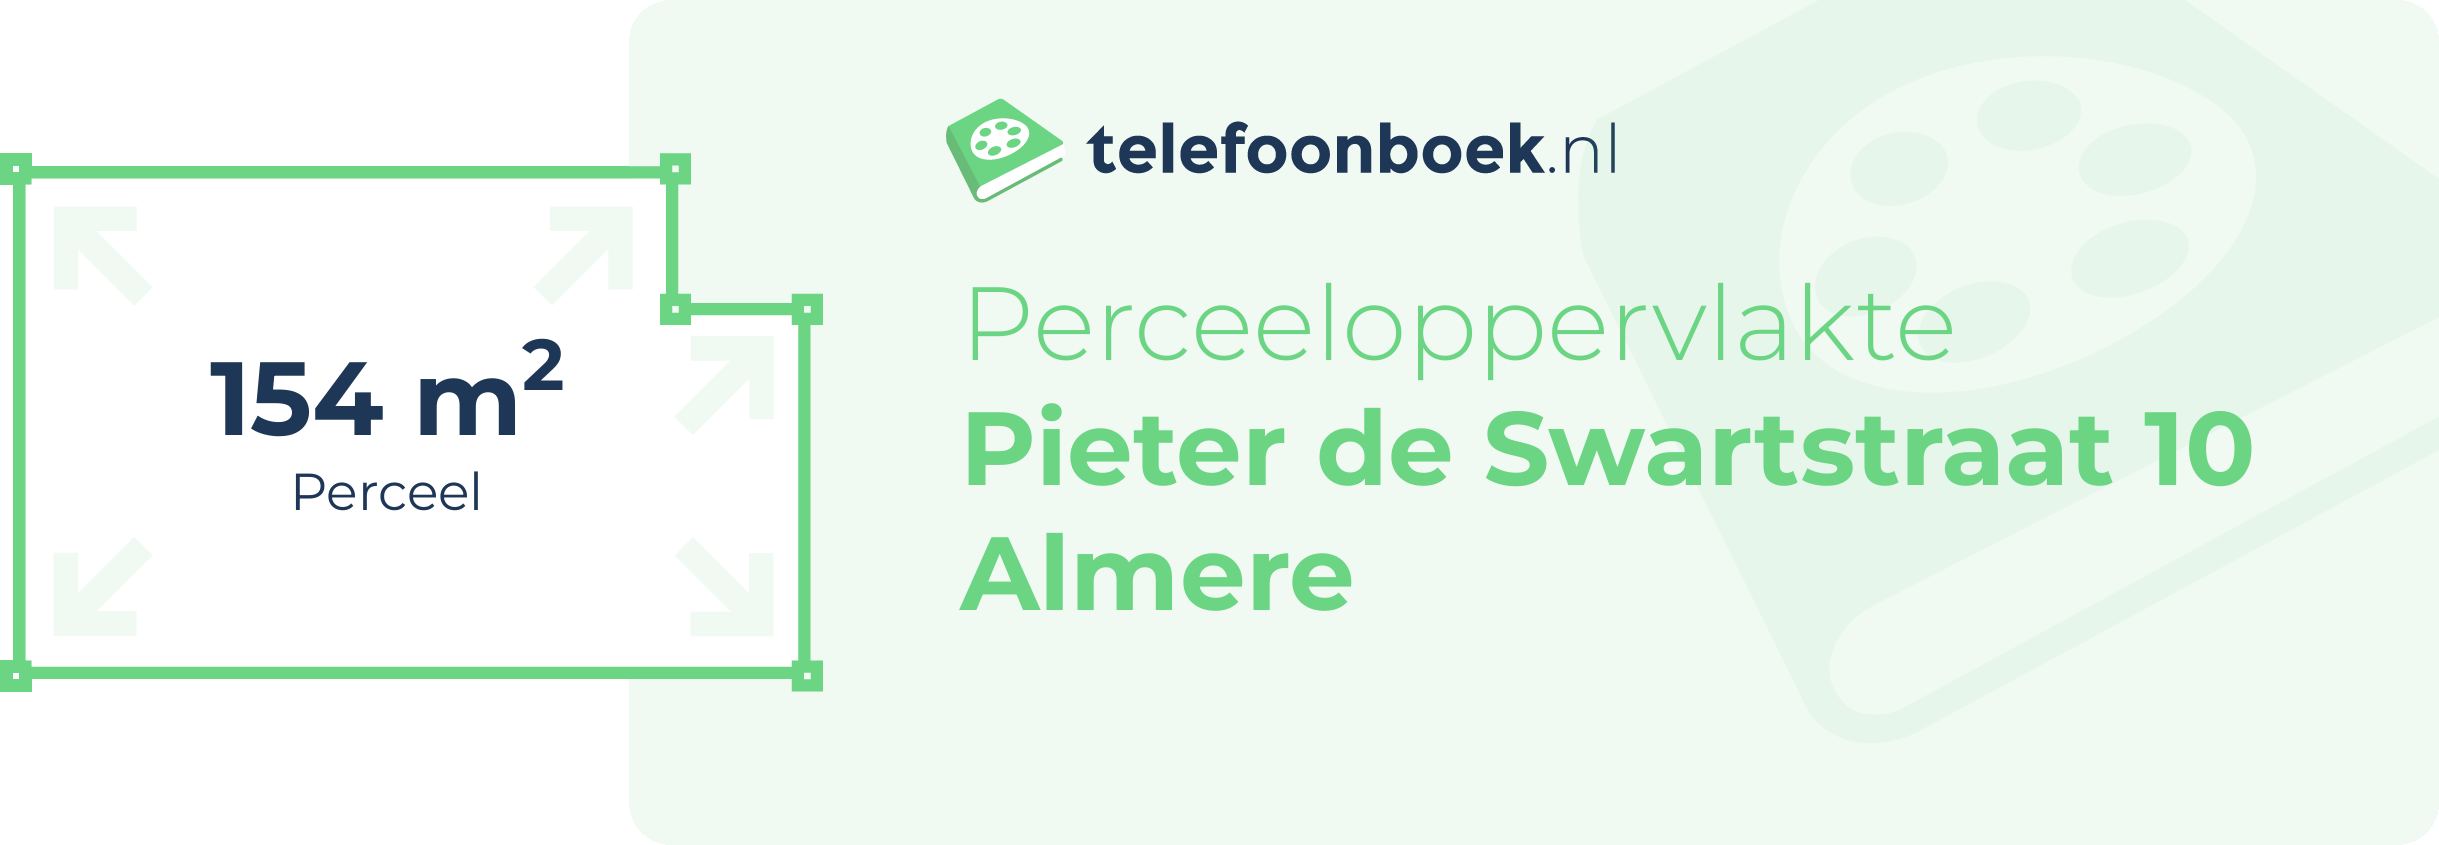 Perceeloppervlakte Pieter De Swartstraat 10 Almere